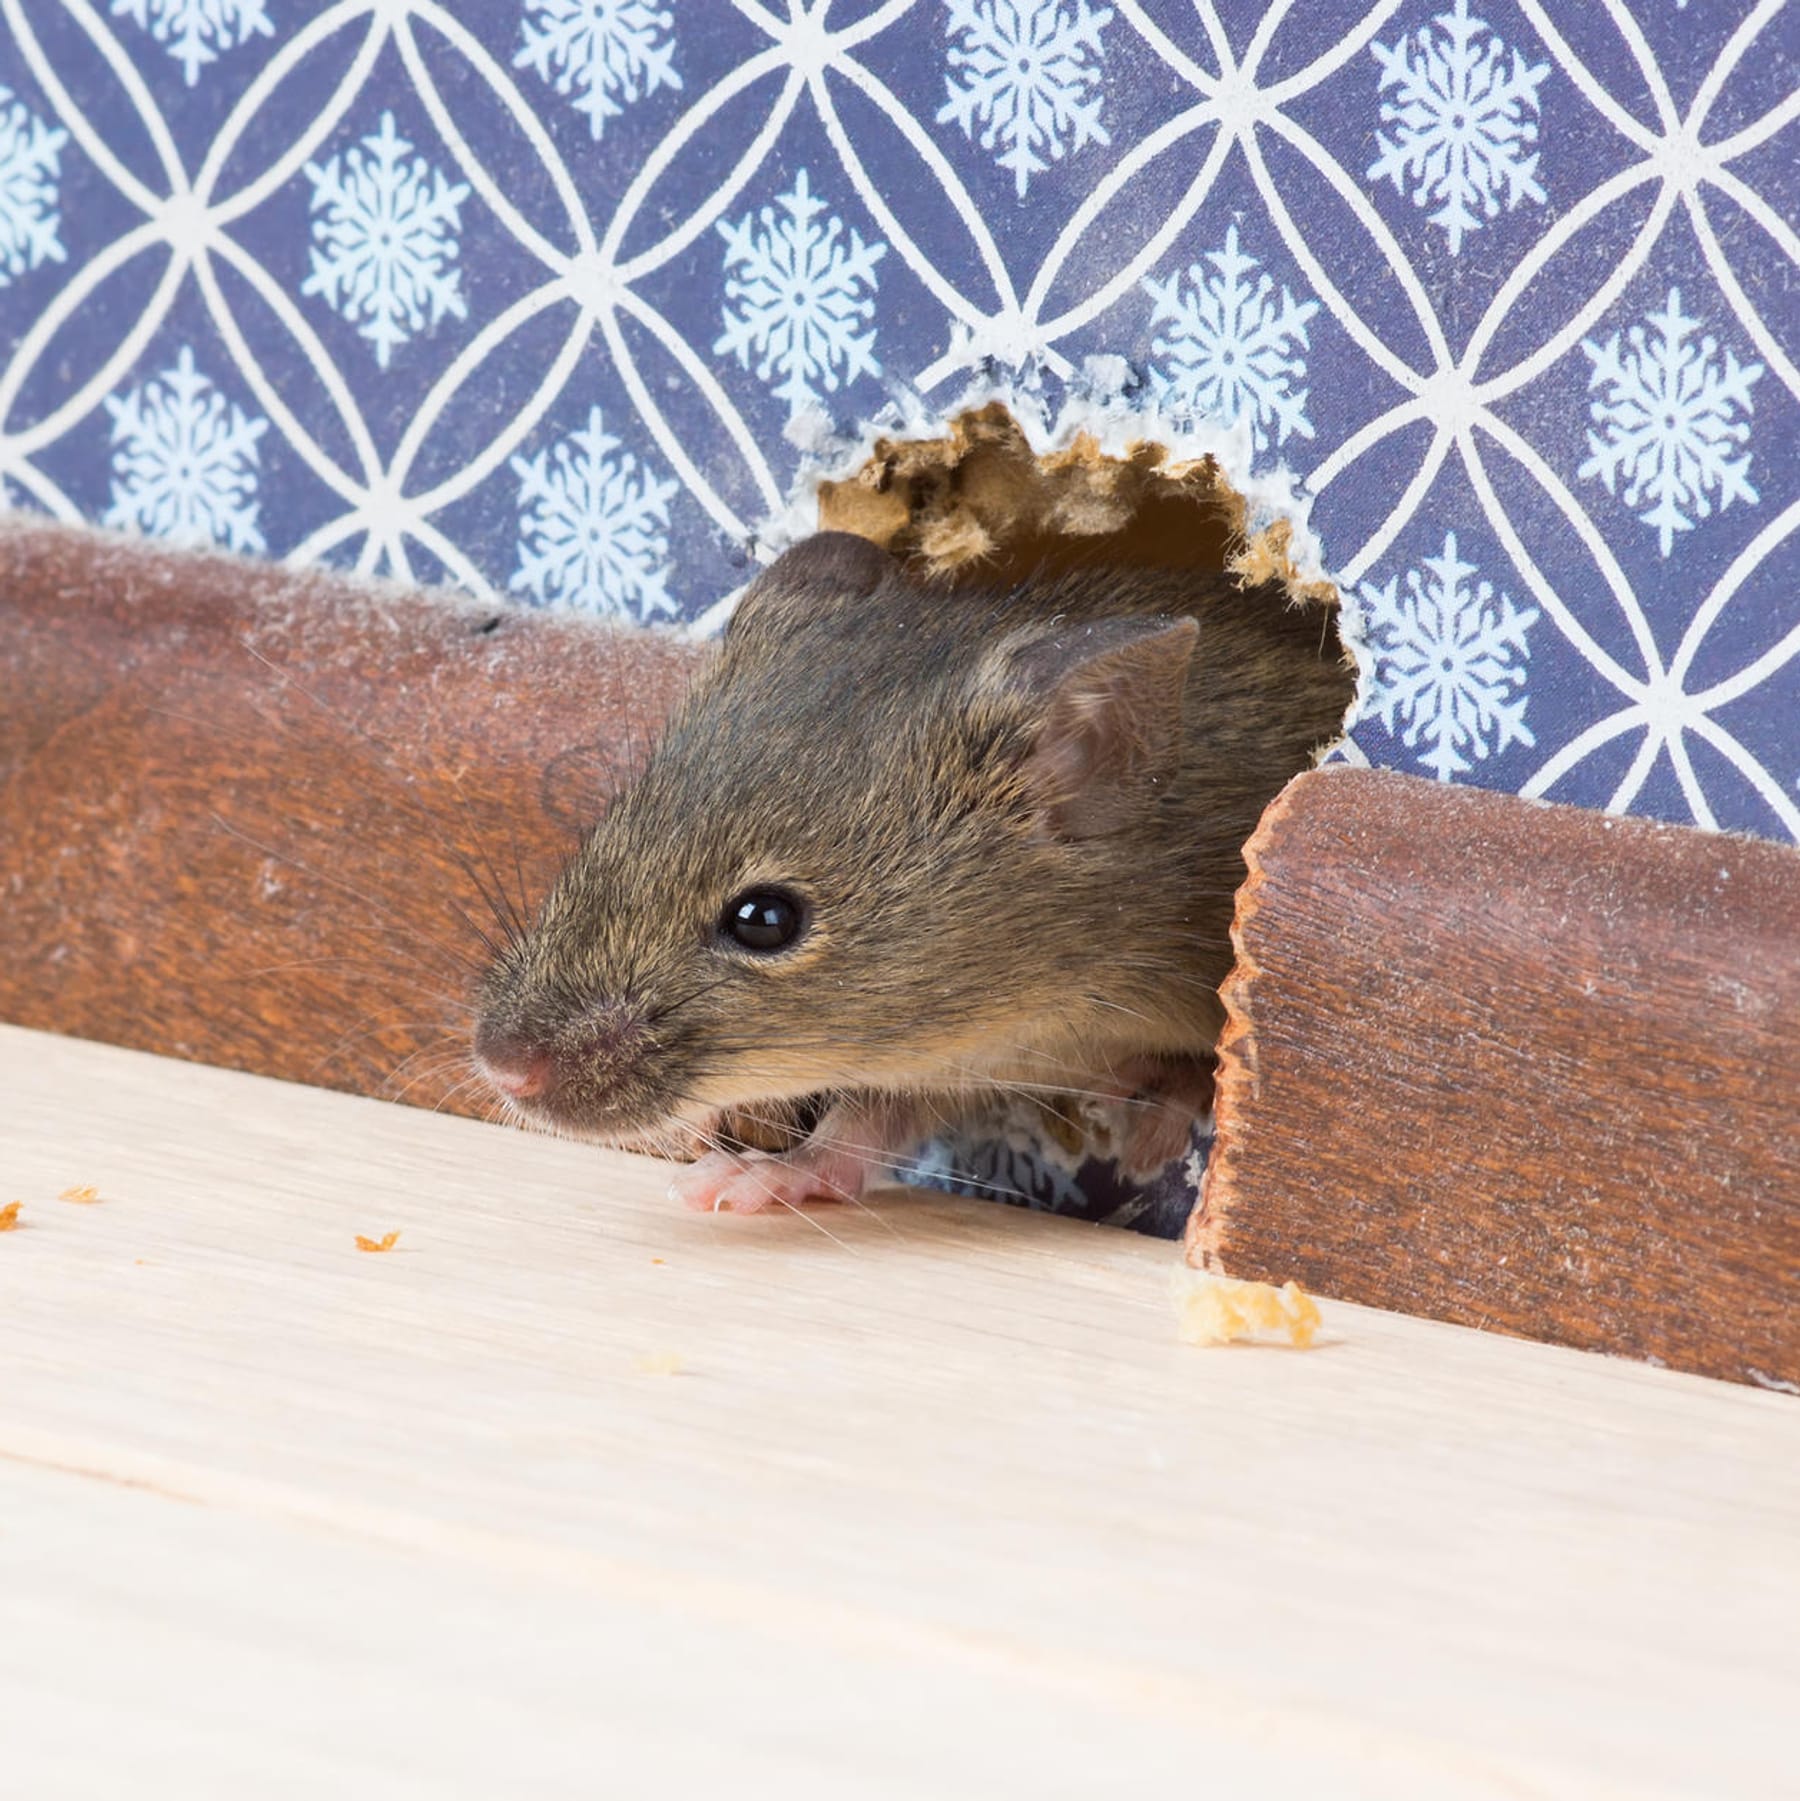 Mäuse im Haus bekämpfen: Mäuse fangen, vergiften oder vertreiben?